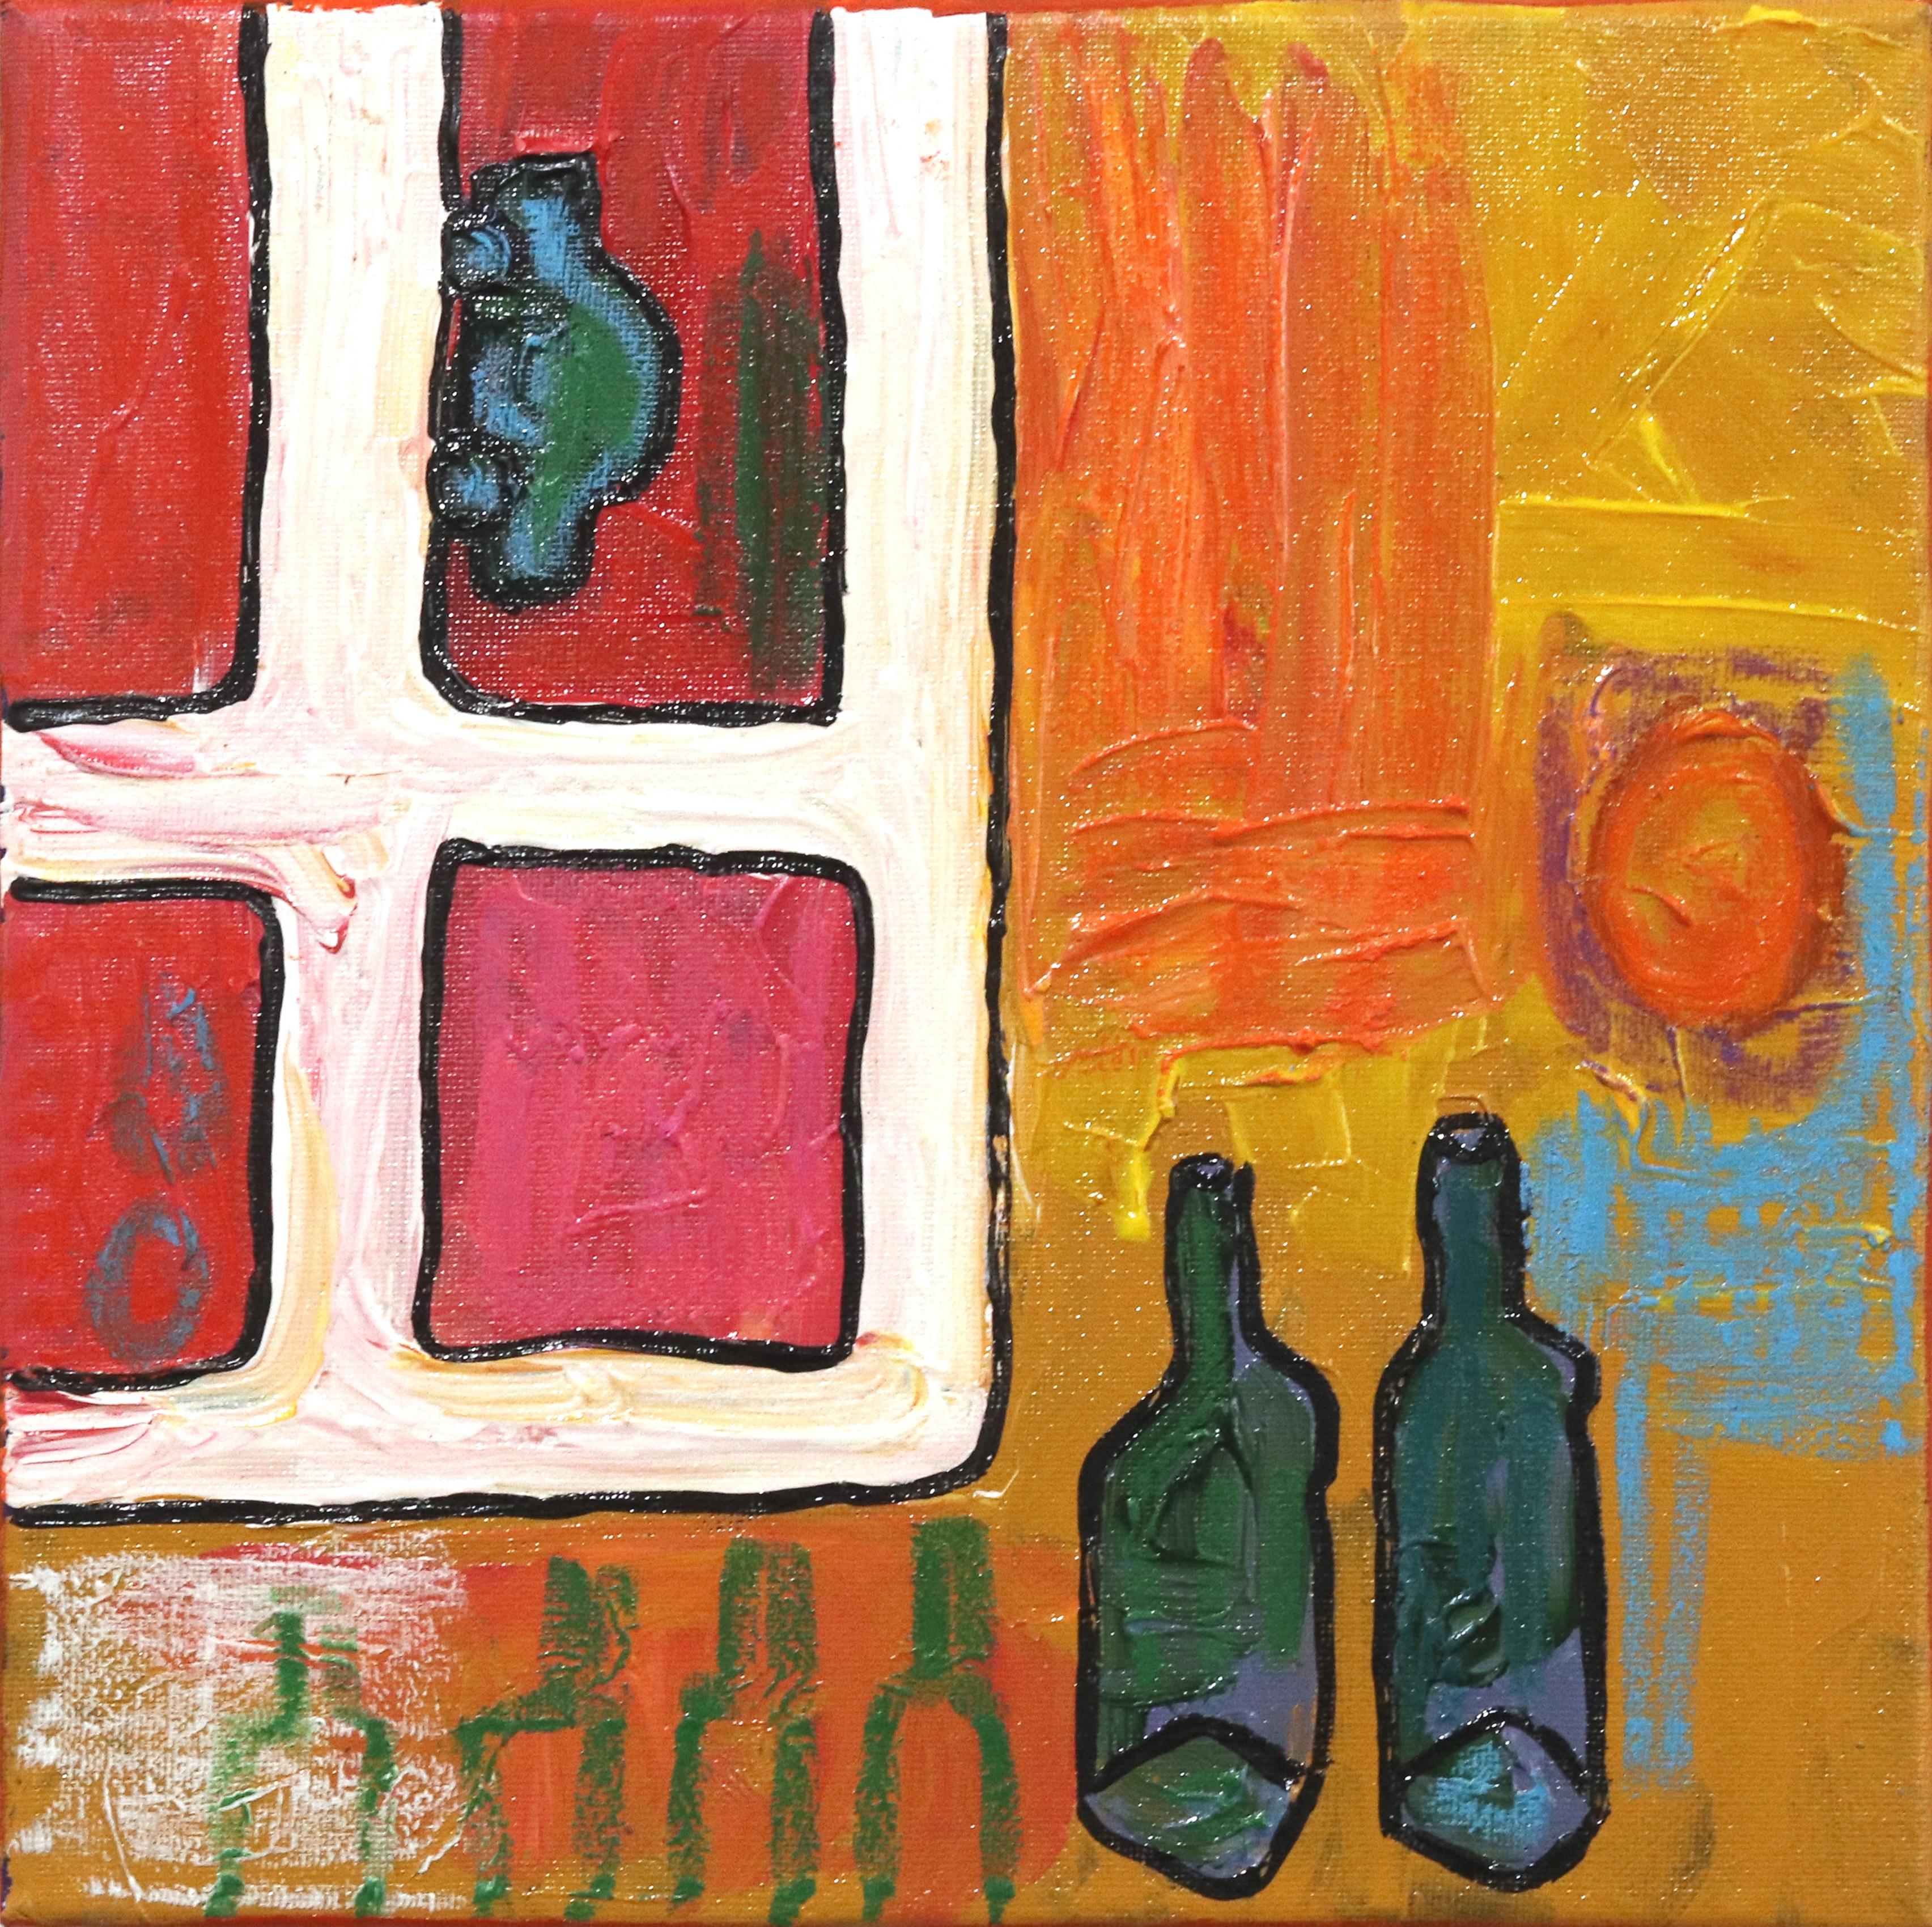 Tisch und Fenster 2 – Abstraktes Stillleben-Kunstwerk auf Leinwand mit bunten Flaschen